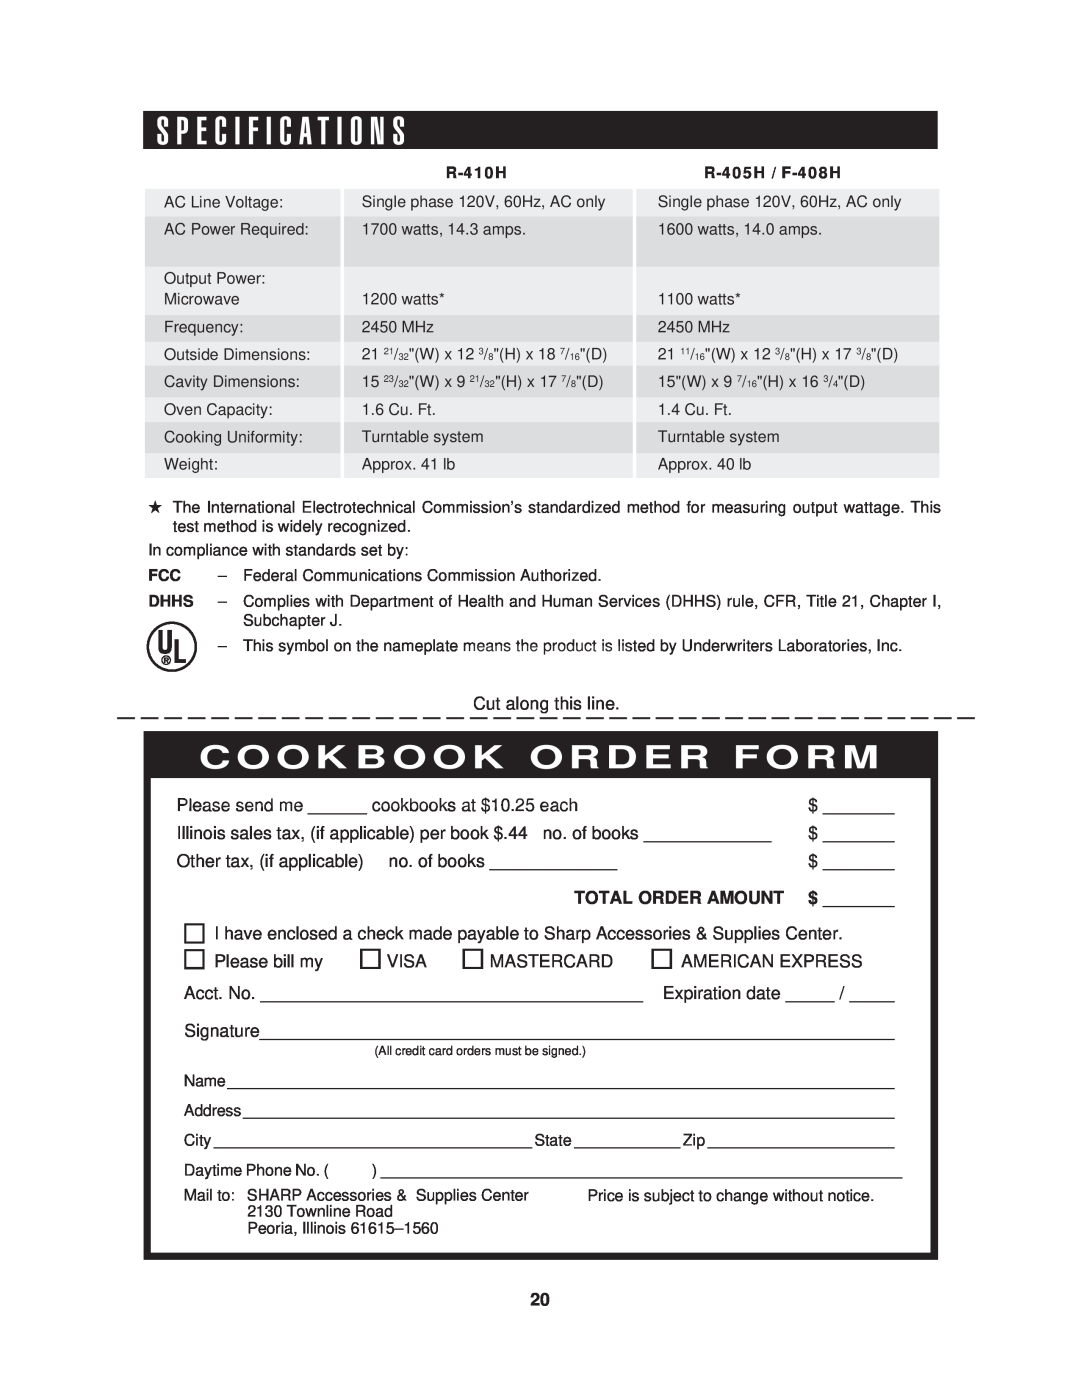 Sharp R-410H, R-405H, R-408H warranty S P E C I F I C A T I O N S, Cookbook Order Form, Total Order Amount 